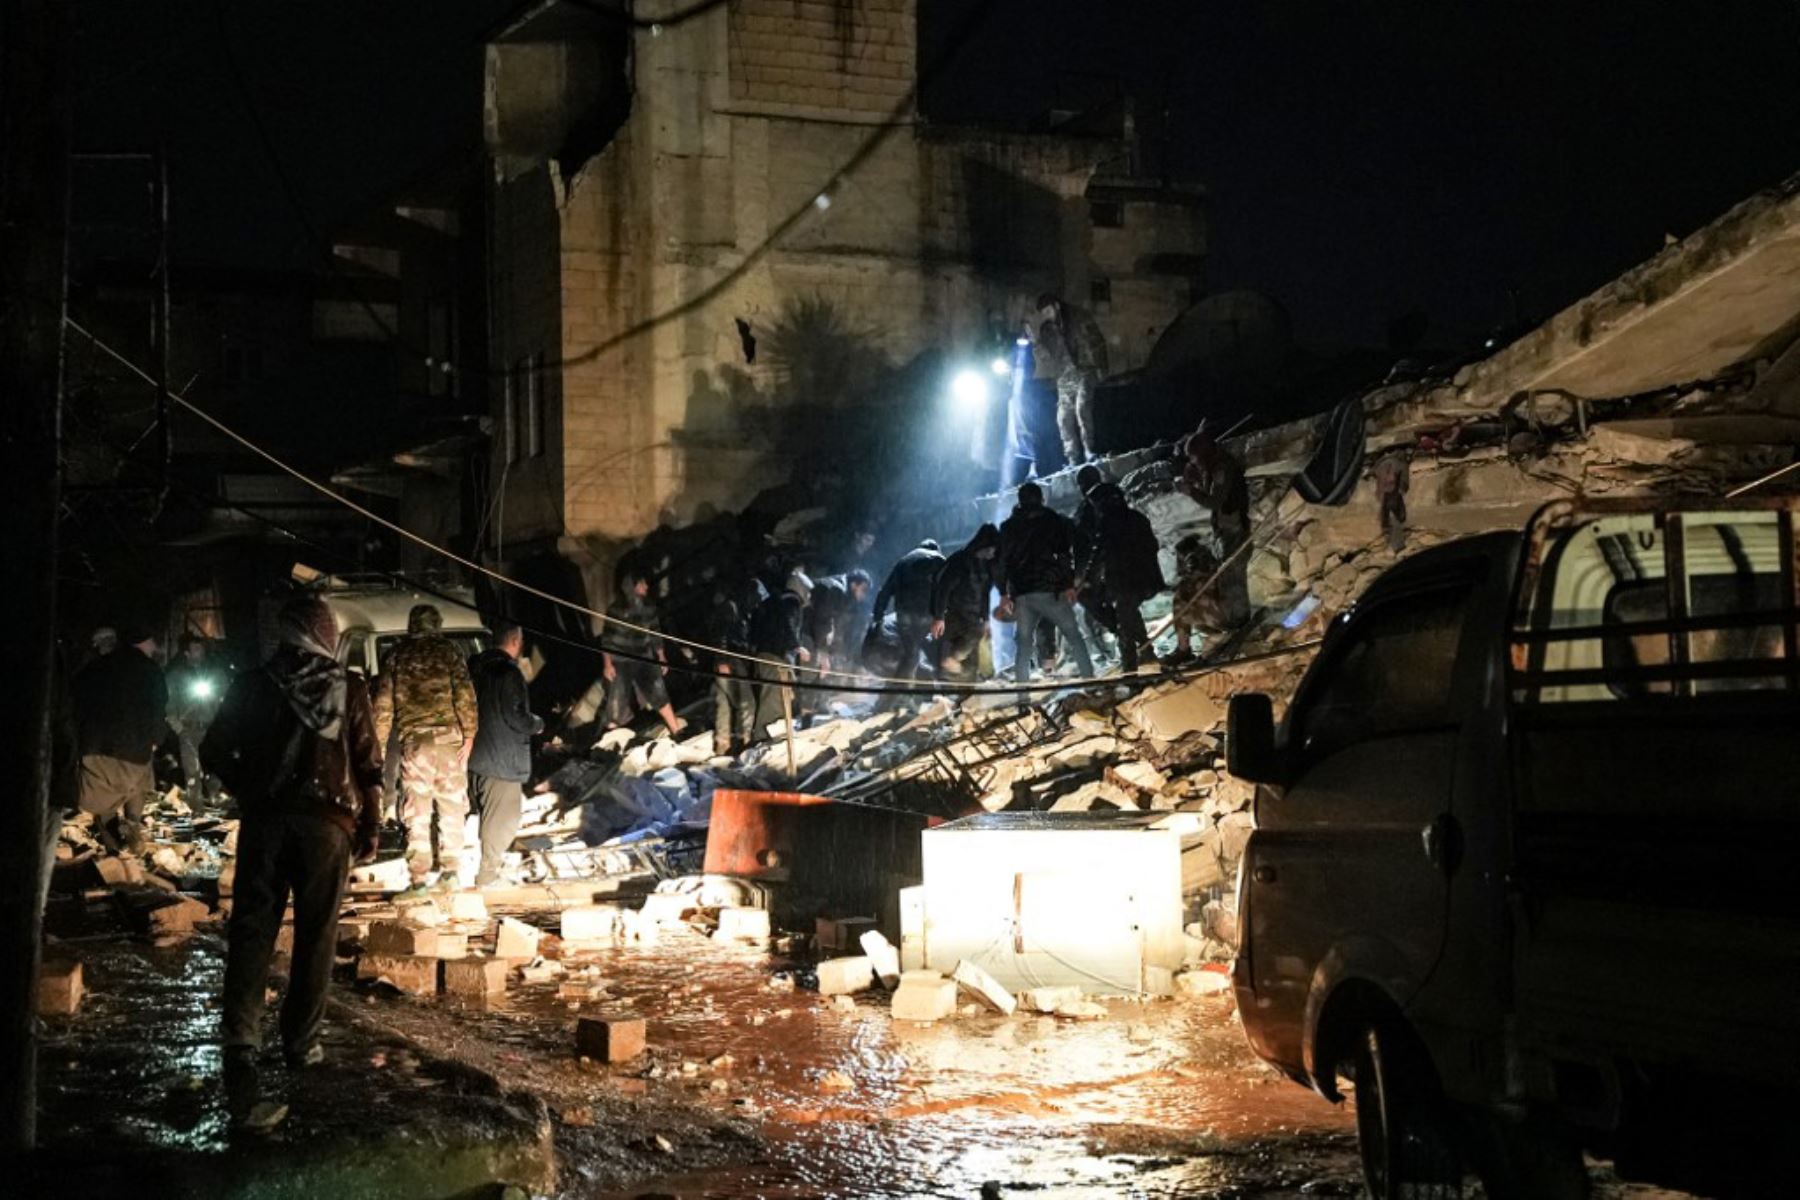 Los residentes caminan entre los escombros entre los edificios derrumbados luego de un terremoto en la ciudad de Jandaris, en el campo de la ciudad de Afrin, en el noroeste de Siria, en la parte de la provincia de Alepo. Según los informes, al menos 42 han muerto. Foto: AFP